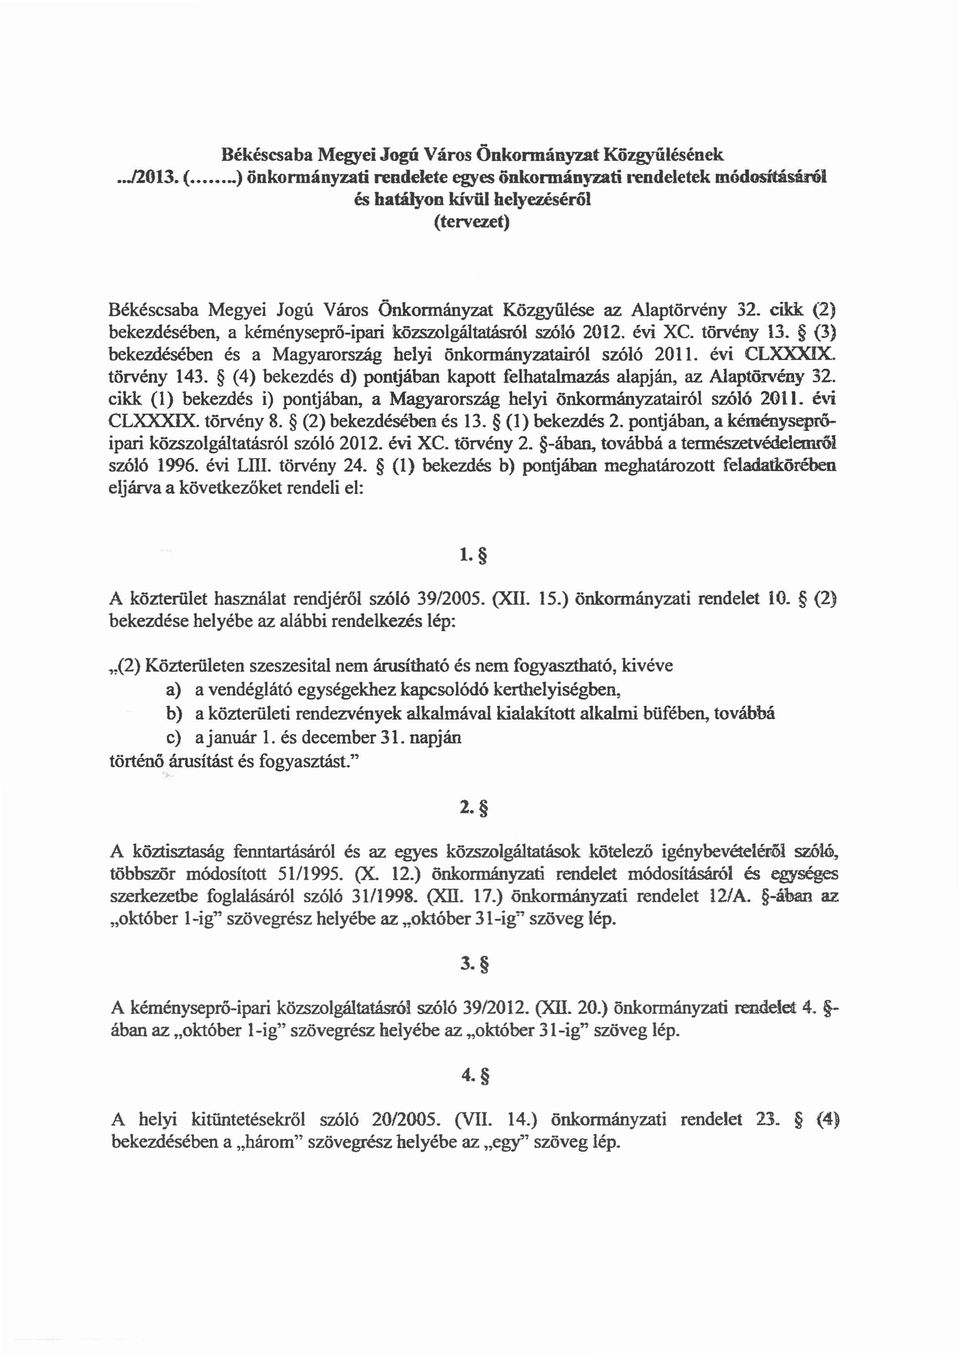 cikk (2) bekezdésében, a kéményseprő-ipari közszolgáltatásről szóló 2012. évi XC. törvény 13. (3) bekezdésében és a Magyarország helyi önkormányzatairól szóló 2011. évi CLXXXIX. törvény 143.